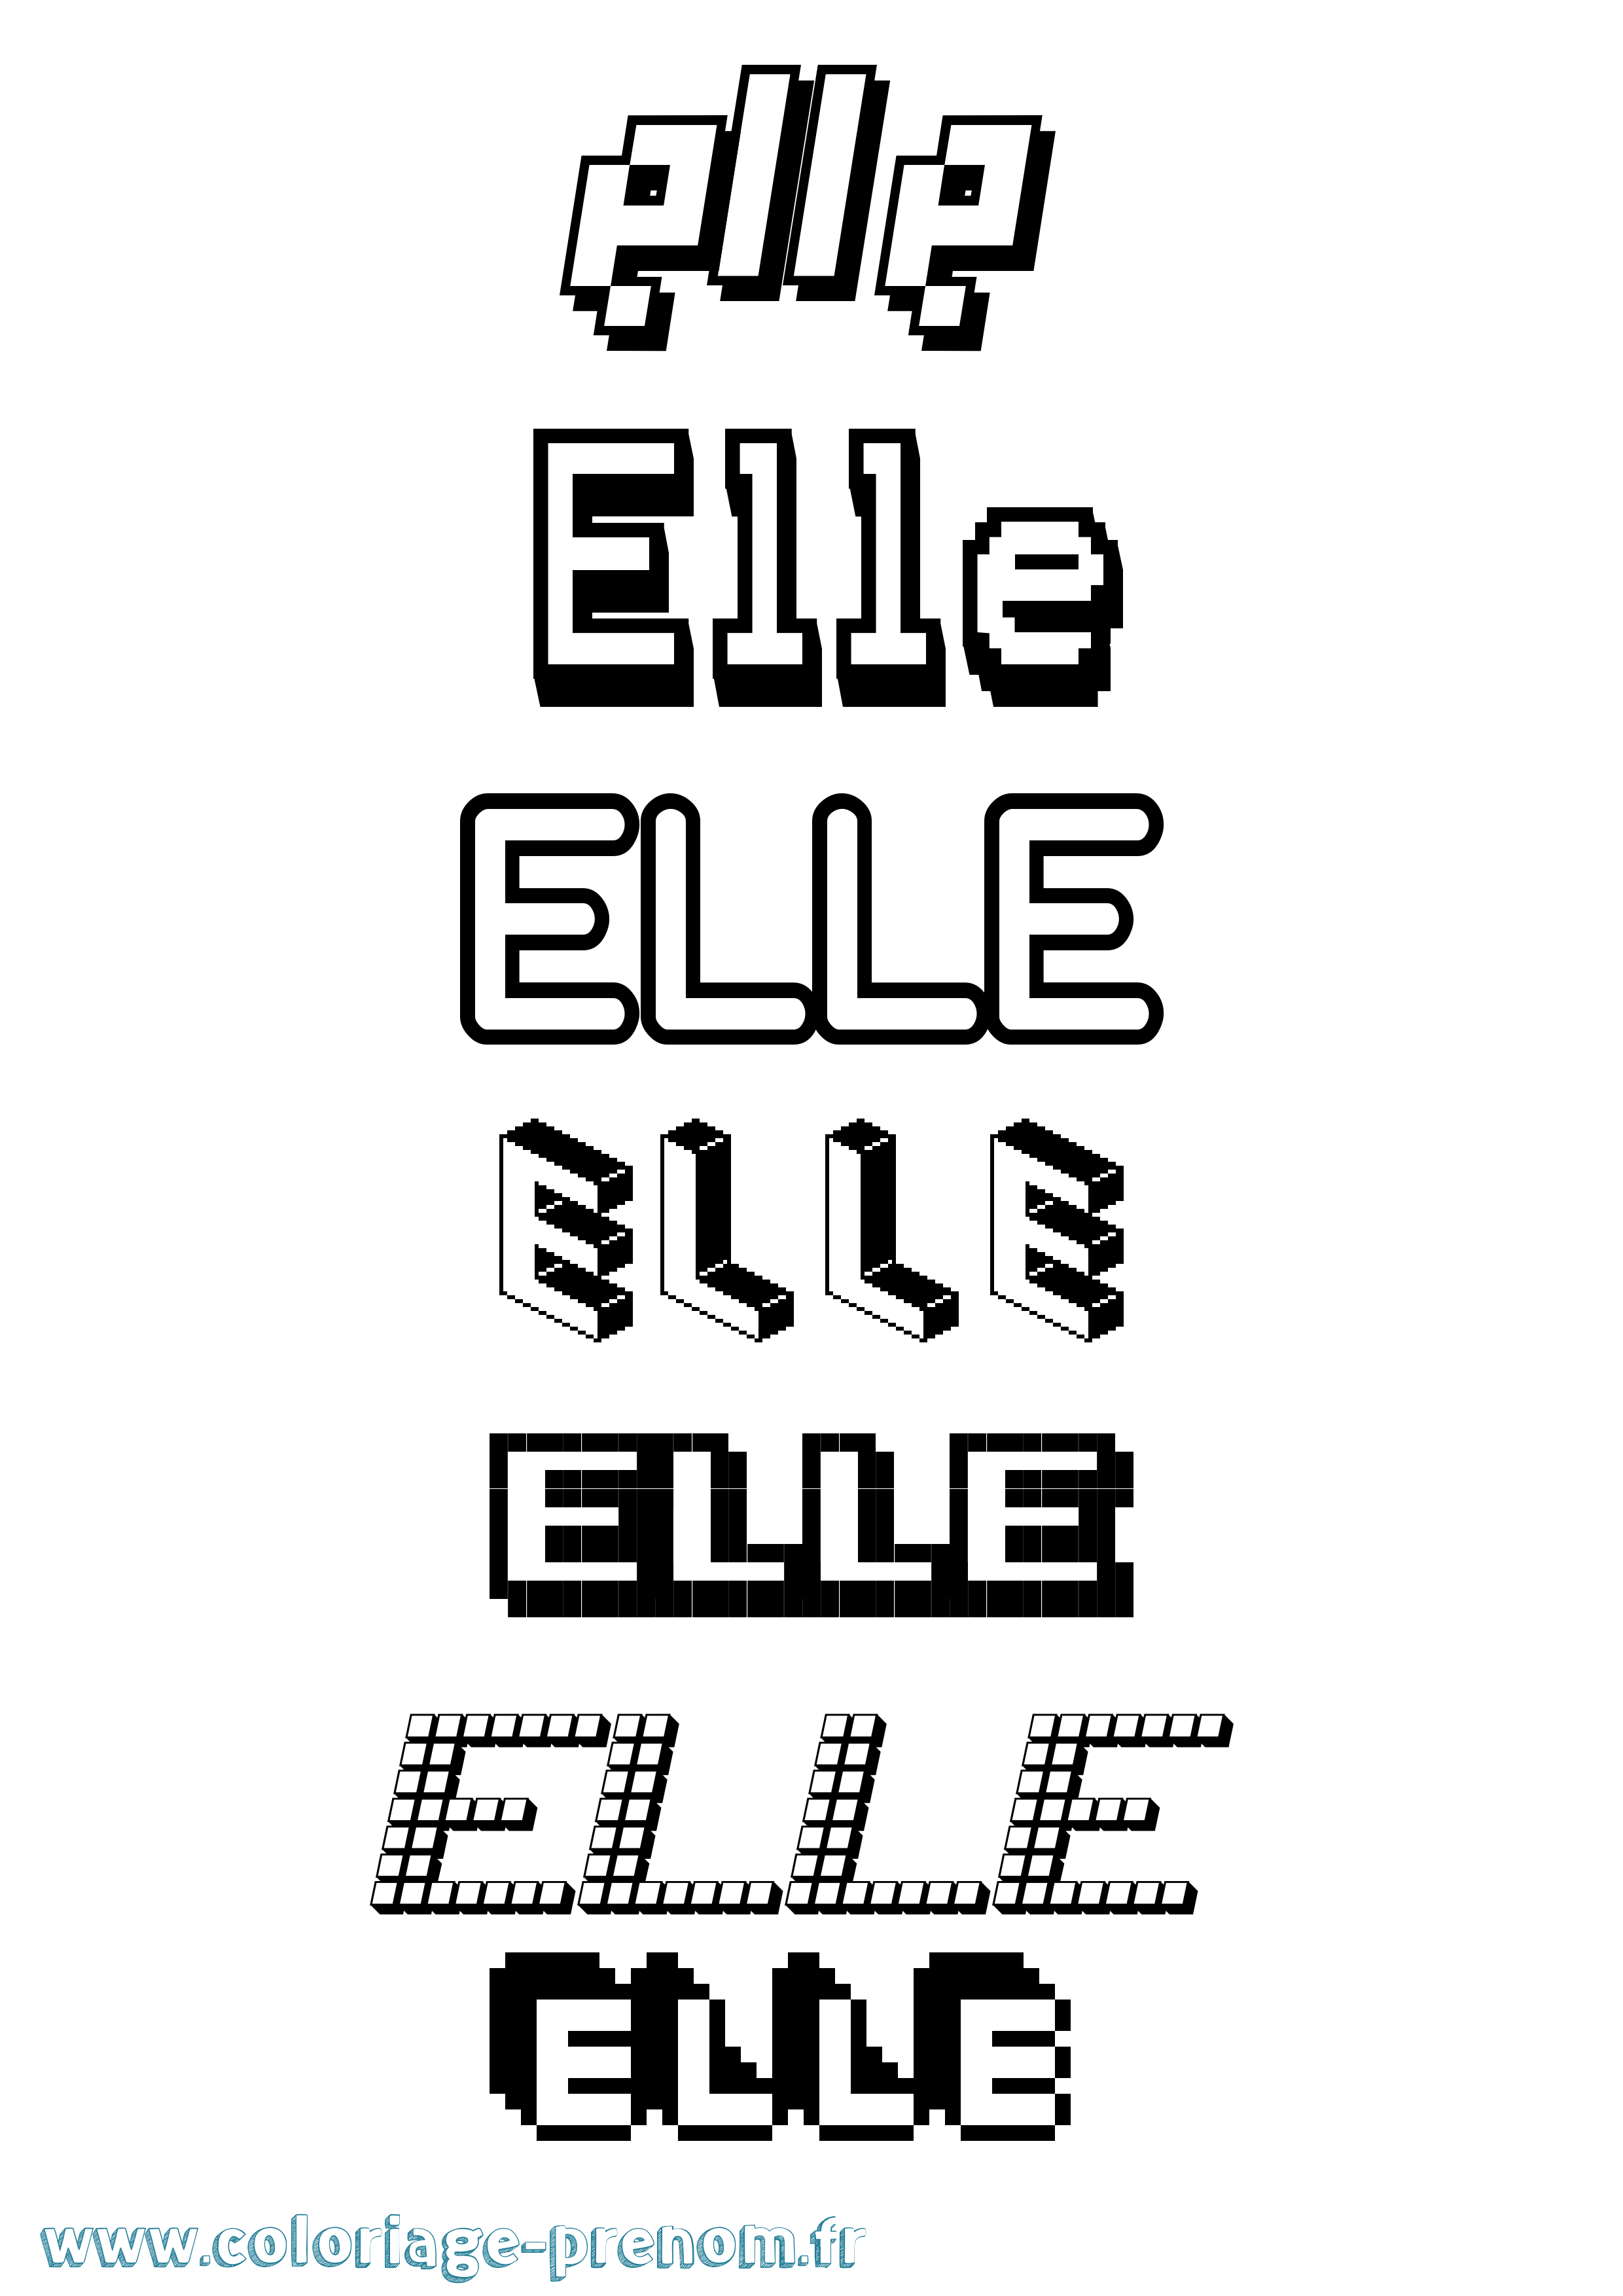 Coloriage prénom Elle Pixel